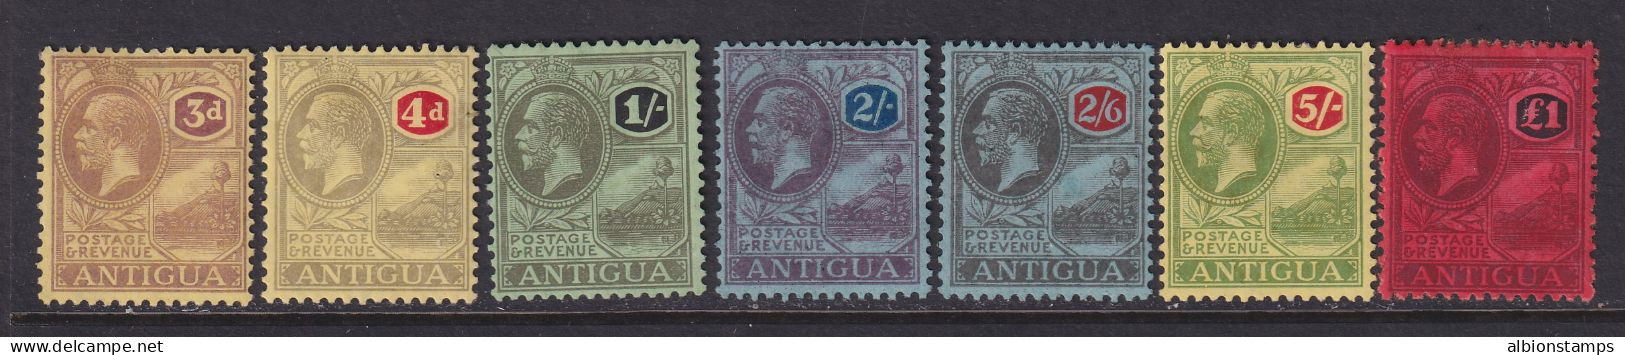 Antigua, Scott 58-64 (SG 55-61), MHR (£1 Some Album Remnants) - 1858-1960 Colonia Británica